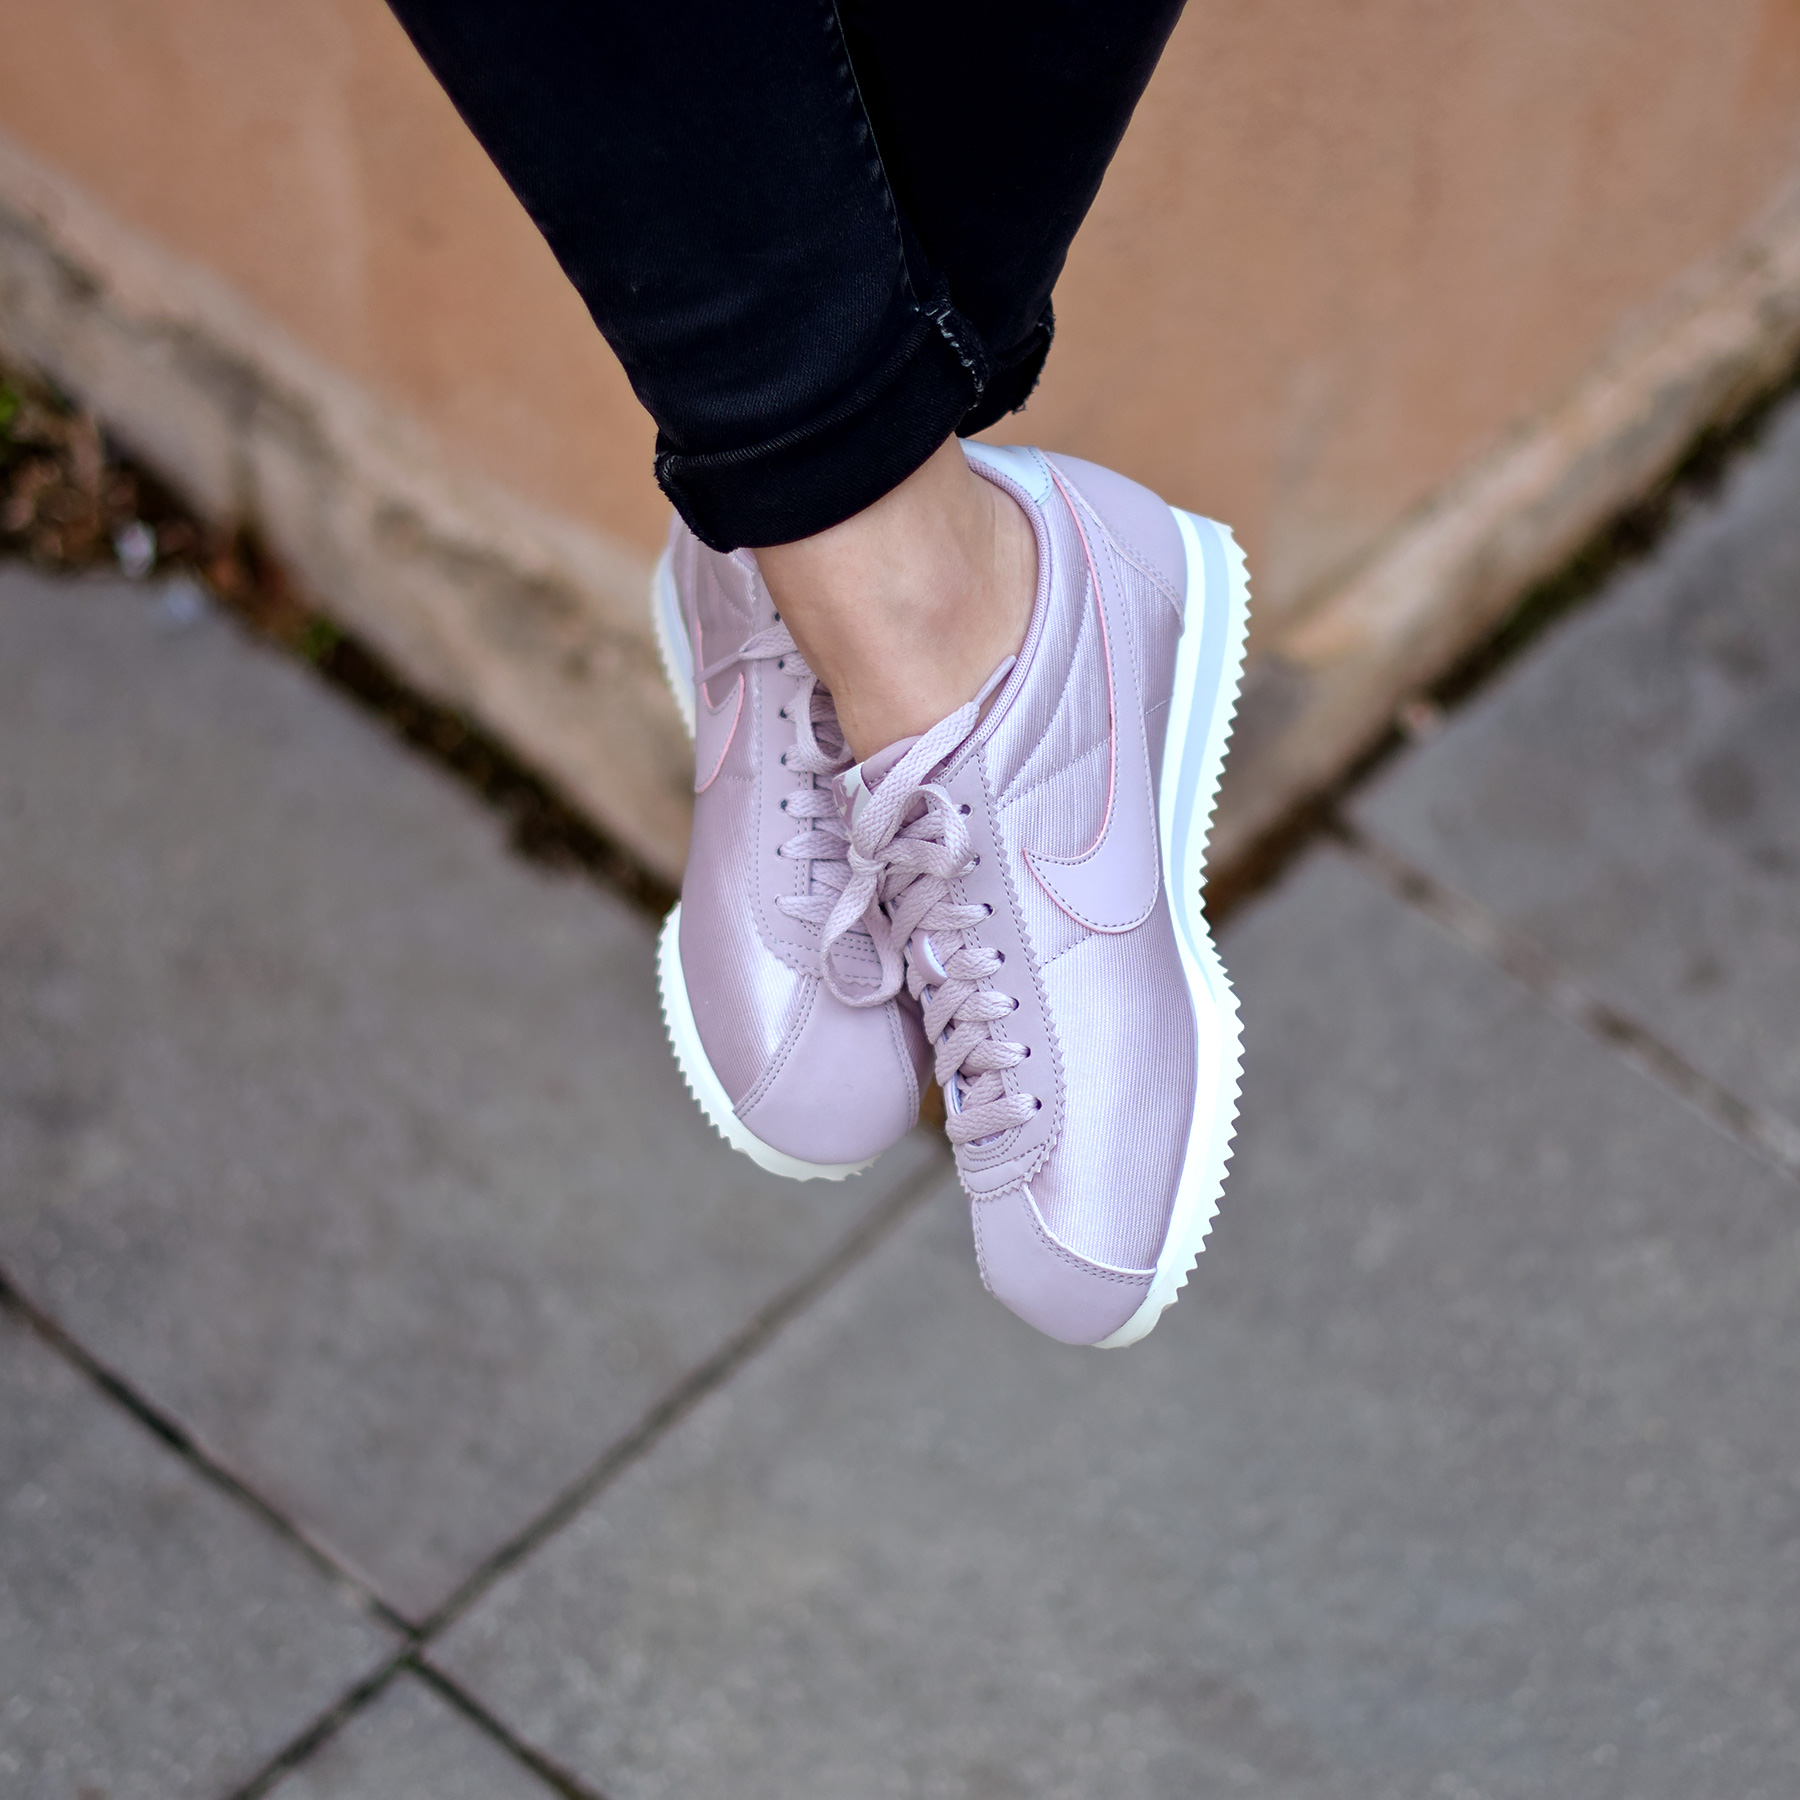 Chaussures Nike Cortez pour Femme